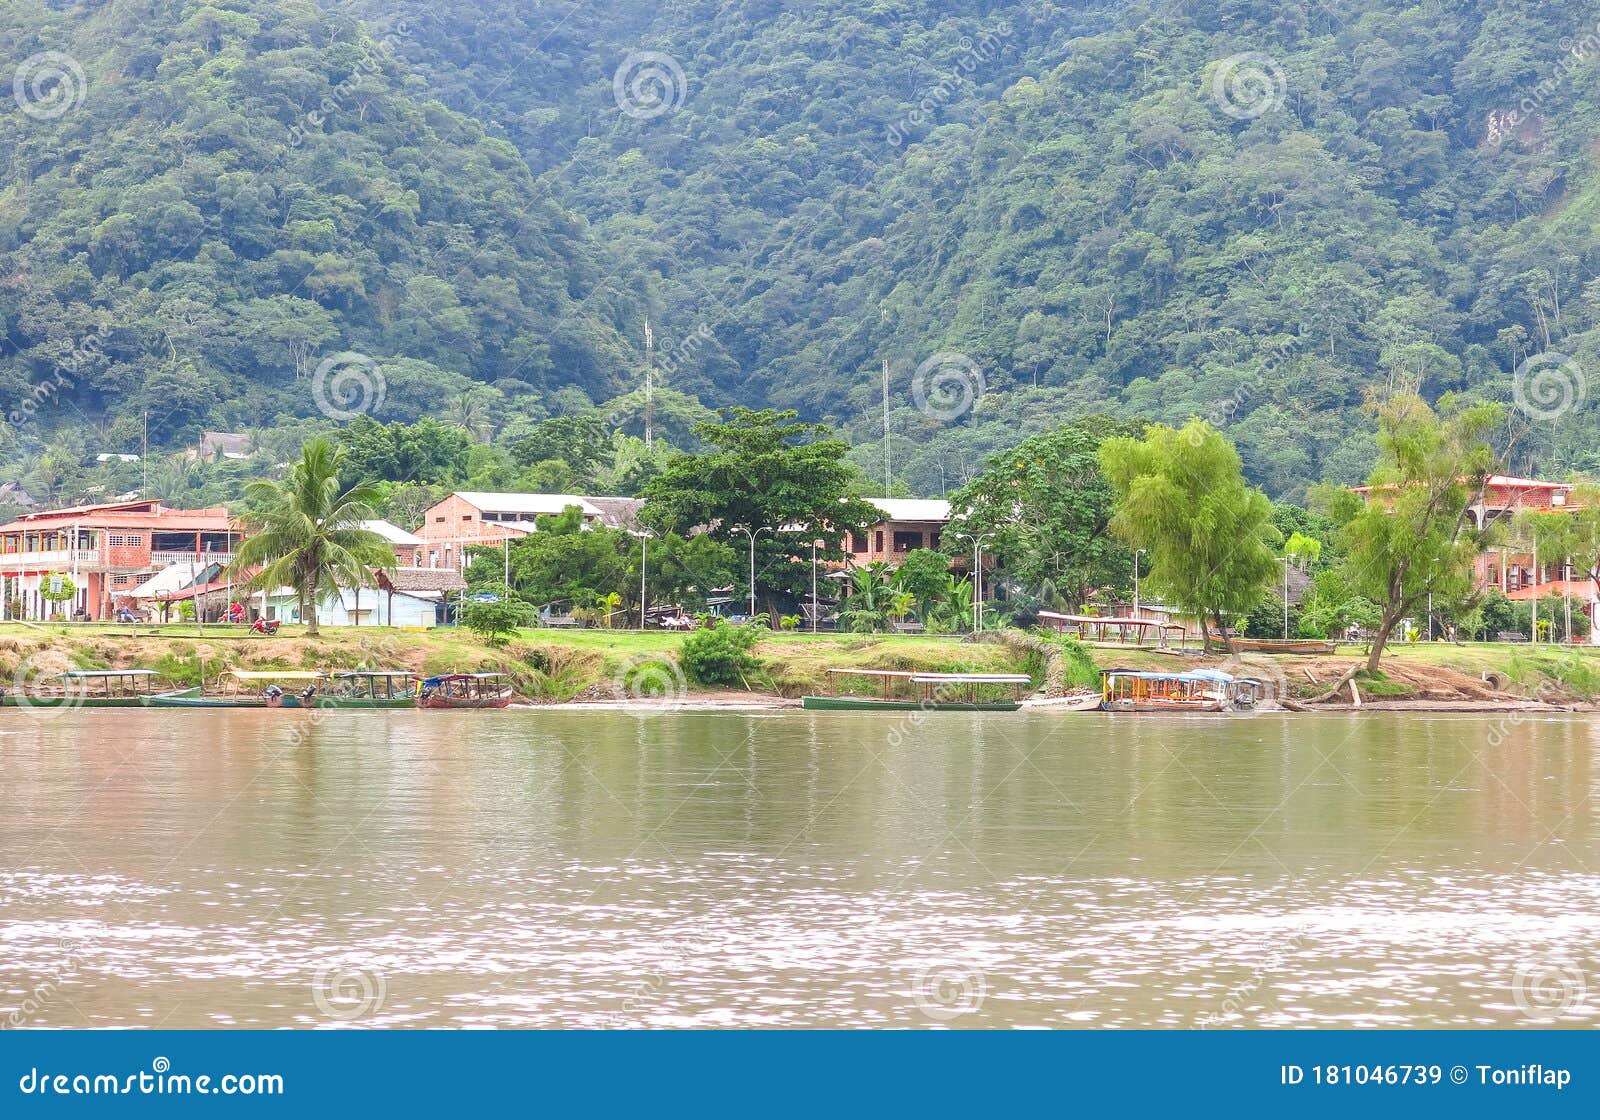 vista general del pueblo amazÃÂ³nico de rurrenabaque, en la orilla del beni river. in the amazon the main transport route is the